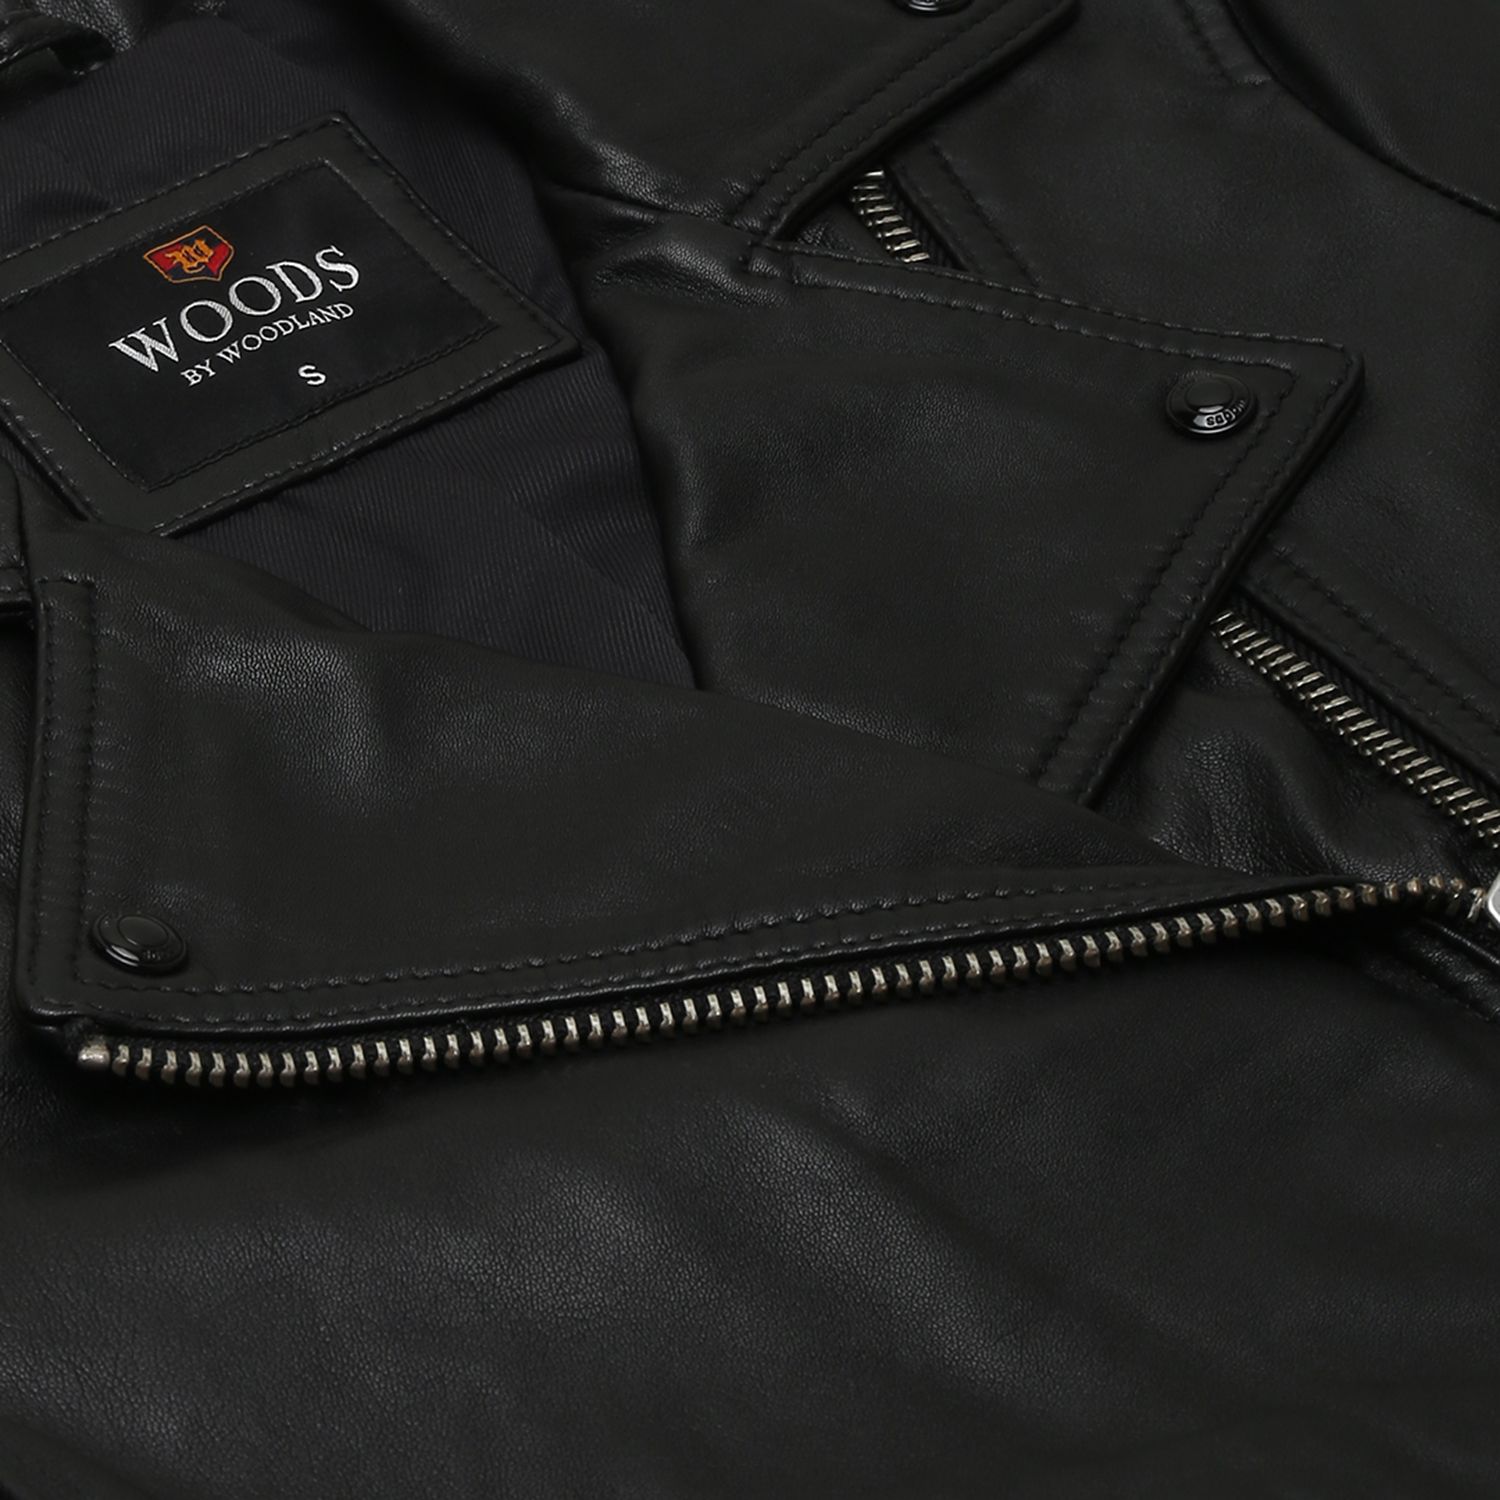 Woodland Leather Wallet & Men Leather Jacket Manufacturer from New Delhi-gemektower.com.vn